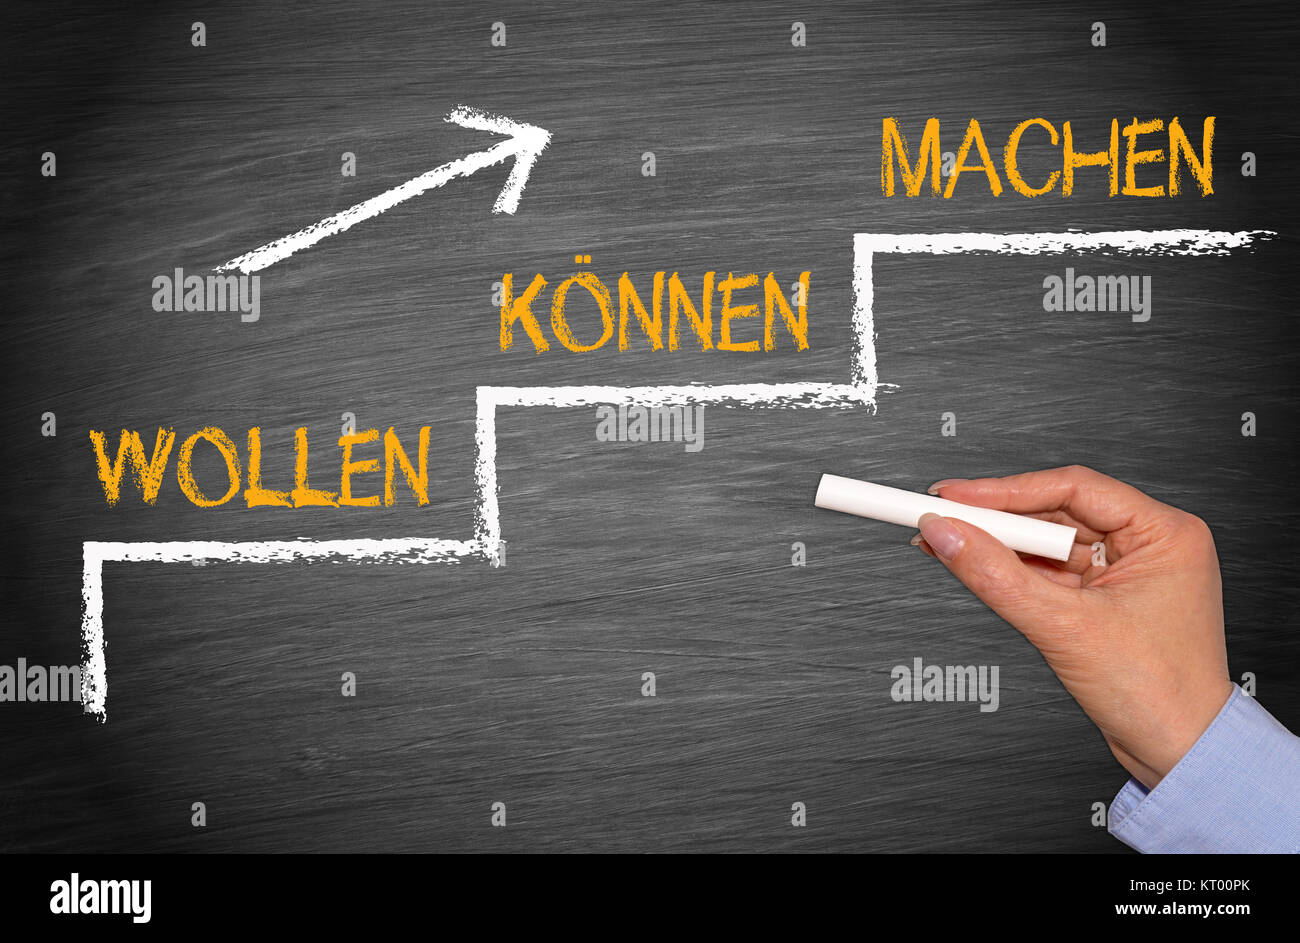 Wollen, Können, Machen - Motivation Stock Photo